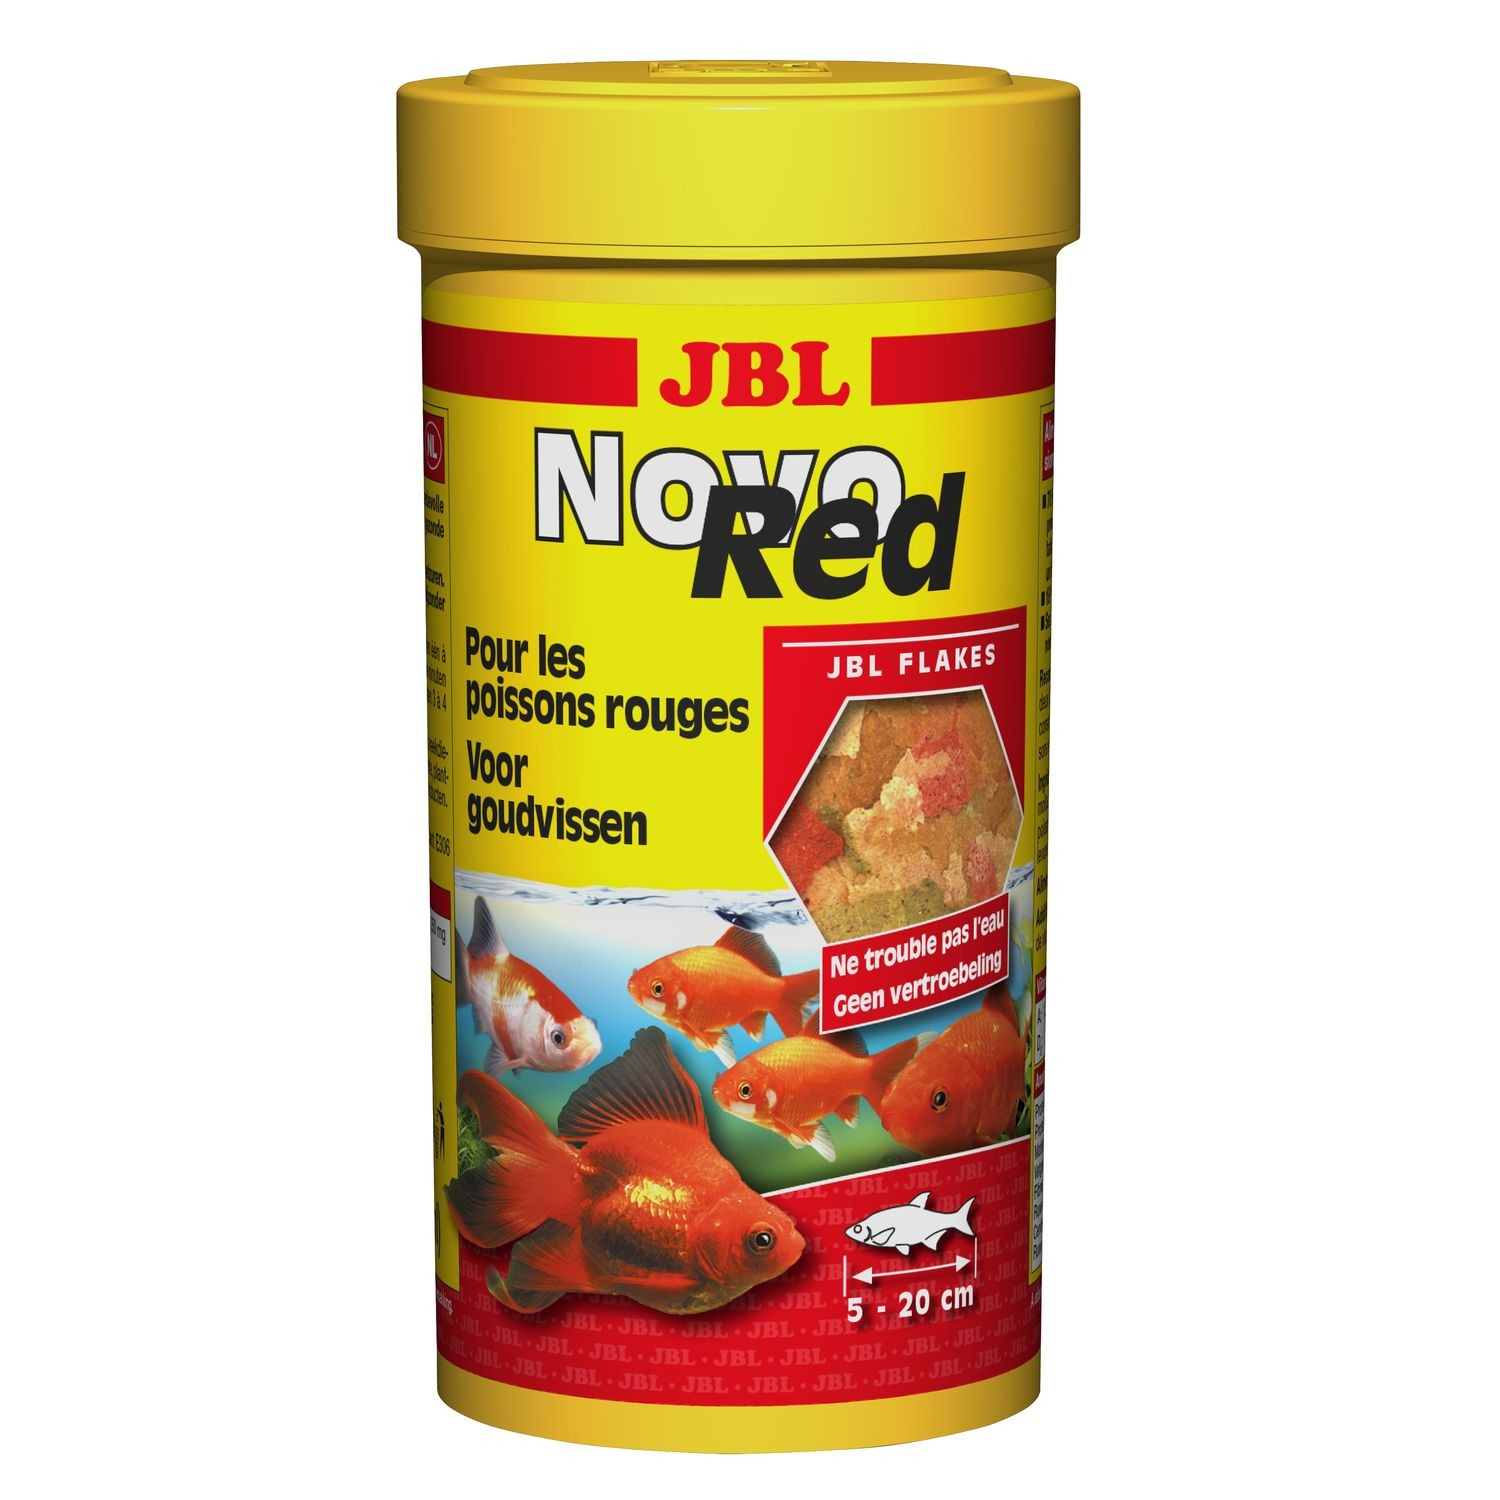 JBL Novo Red vlokvoer voor goudvissen